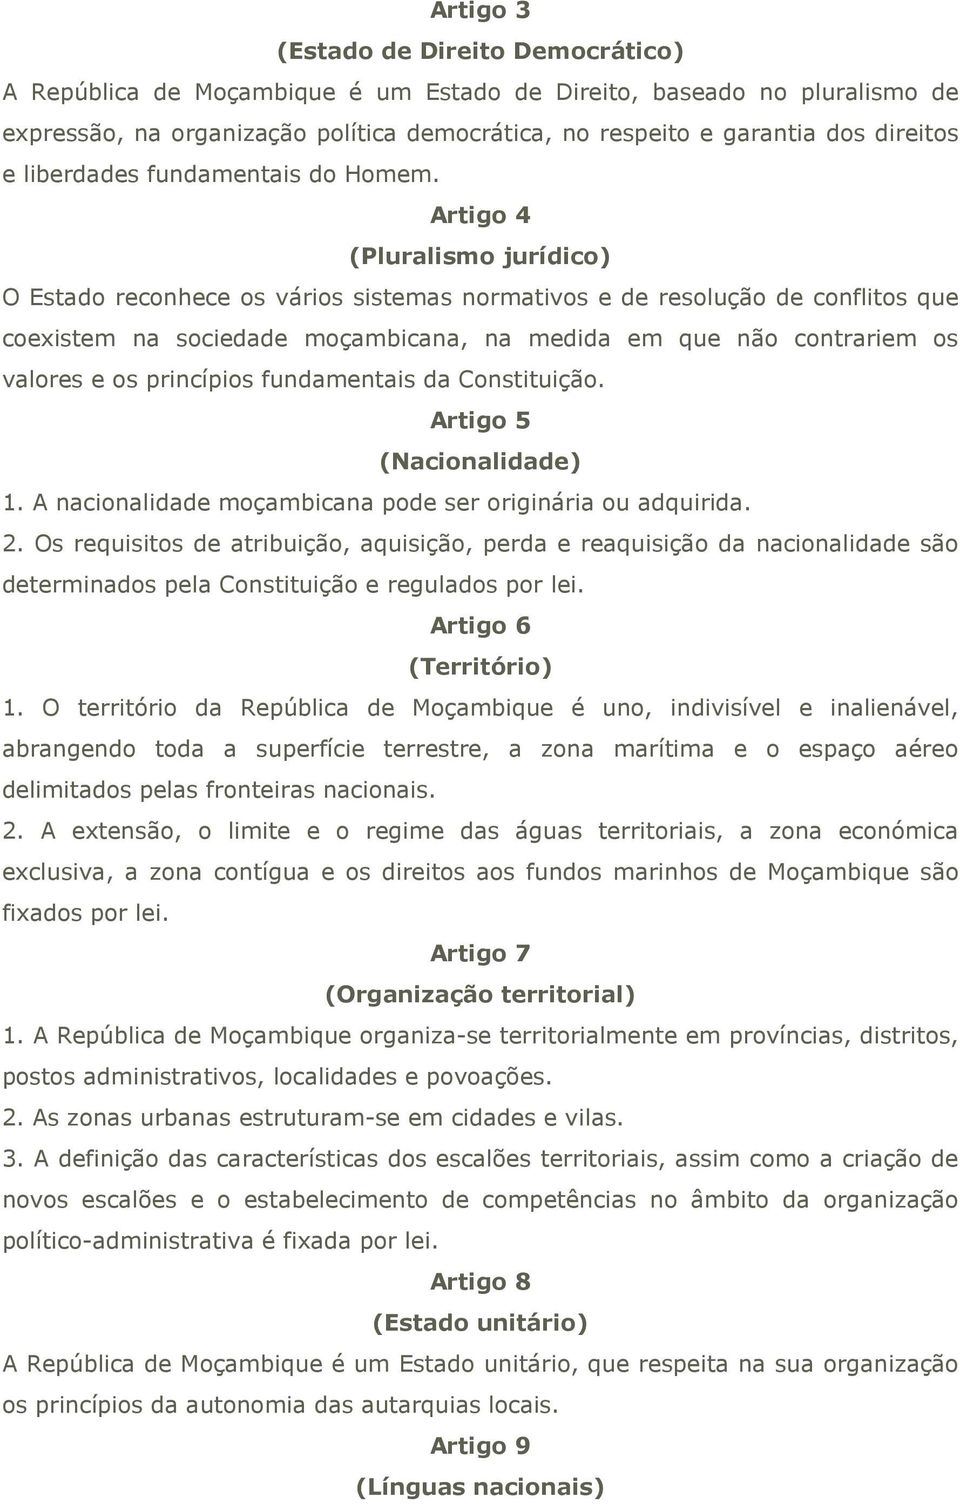 Artigo 4 (Pluralismo jurídico) O Estado reconhece os vários sistemas normativos e de resolução de conflitos que coexistem na sociedade moçambicana, na medida em que não contrariem os valores e os